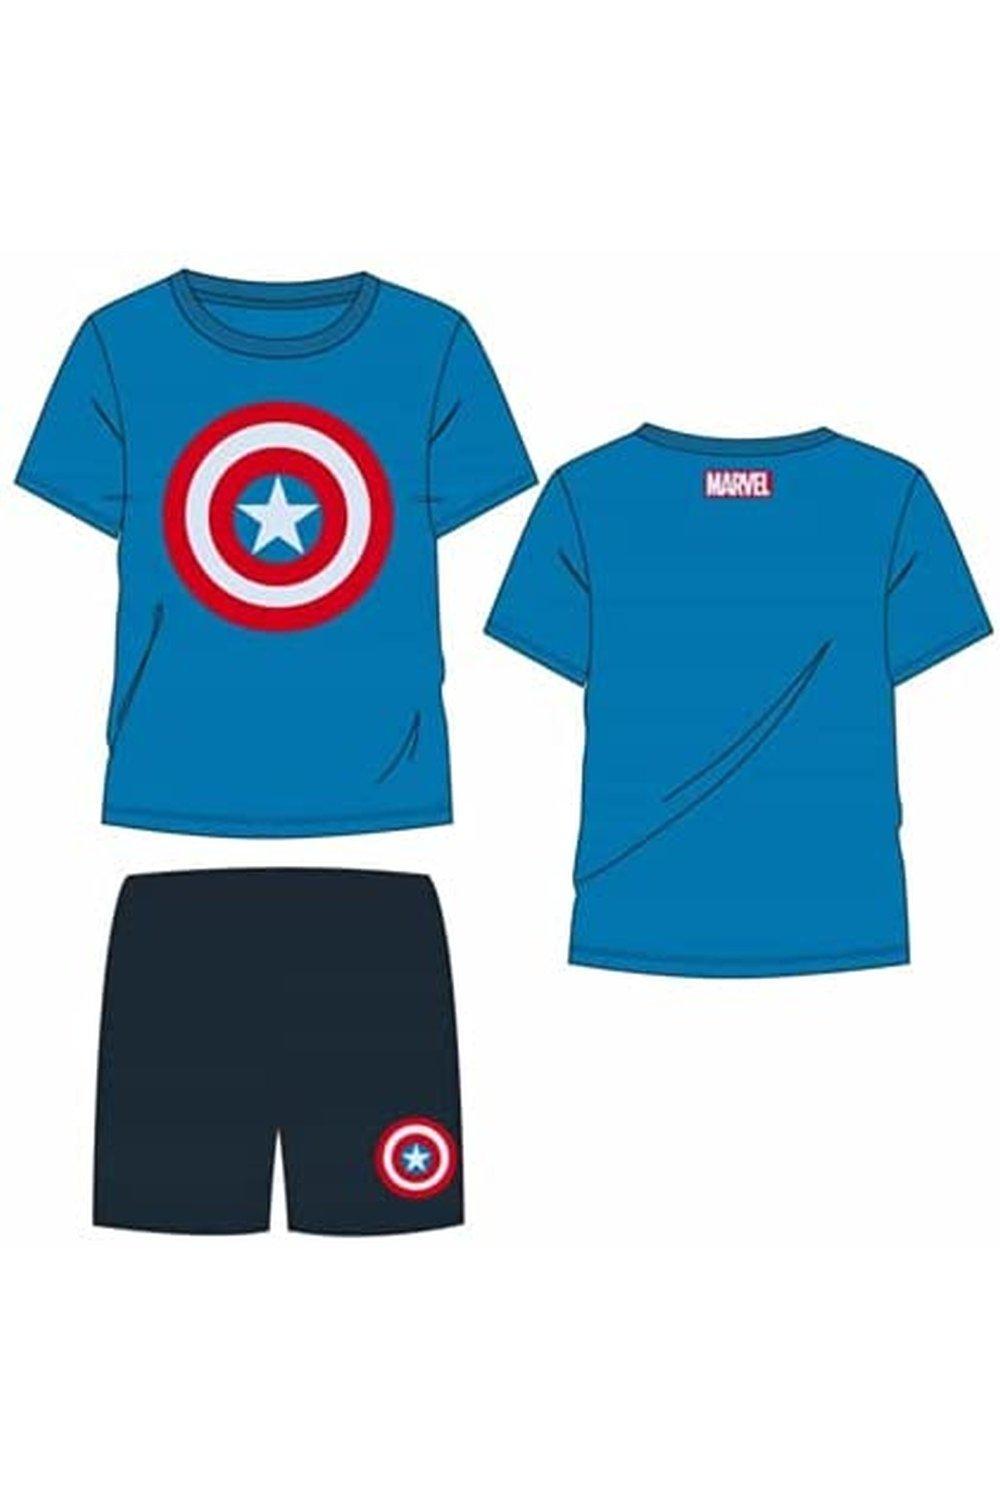 Пижамный комплект «Мстители: Капитан Америка» Marvel, мультиколор пижамный комплект мстители капитан америка marvel мультиколор